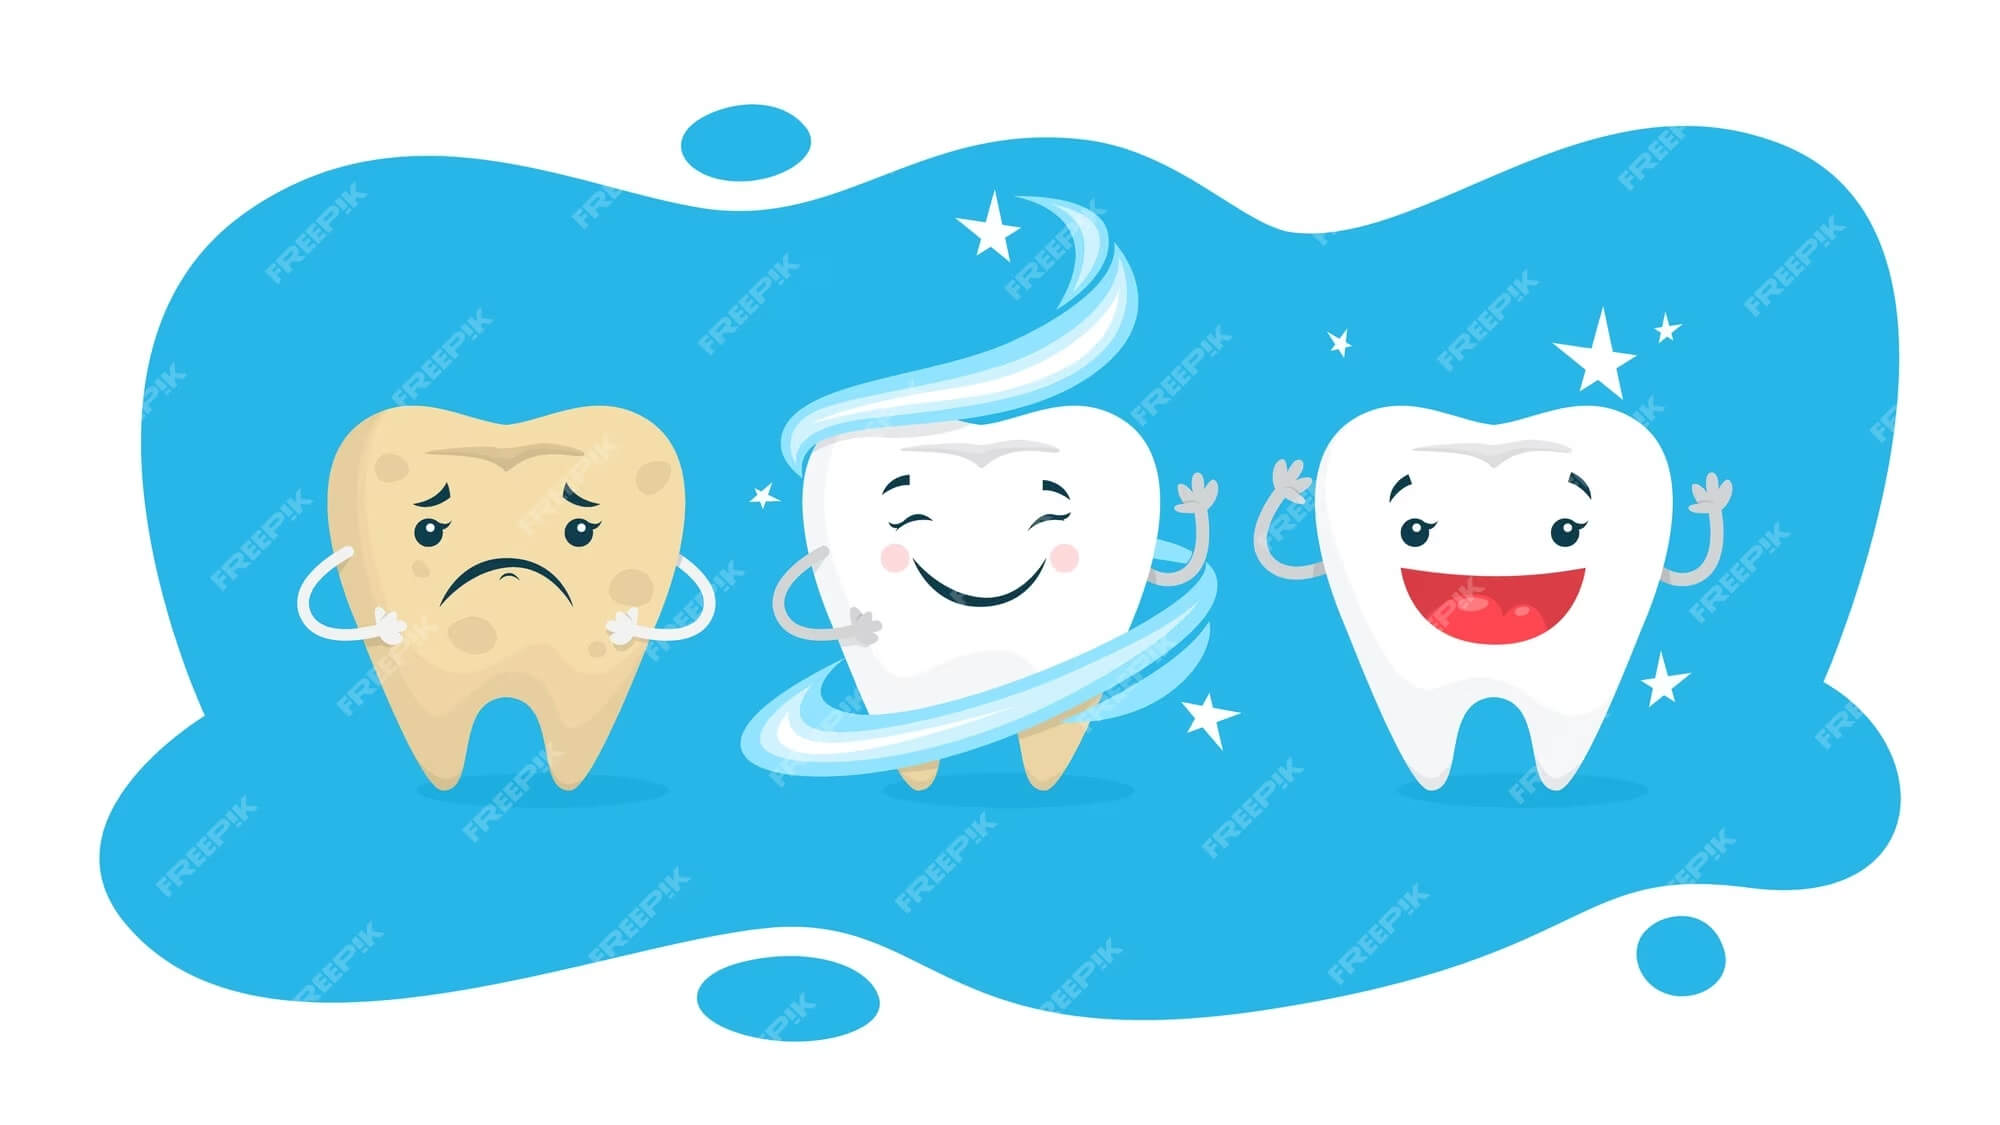 Sich entwickelnde Trends bei der Zahnaufhellung: Jenseits traditioneller Methoden